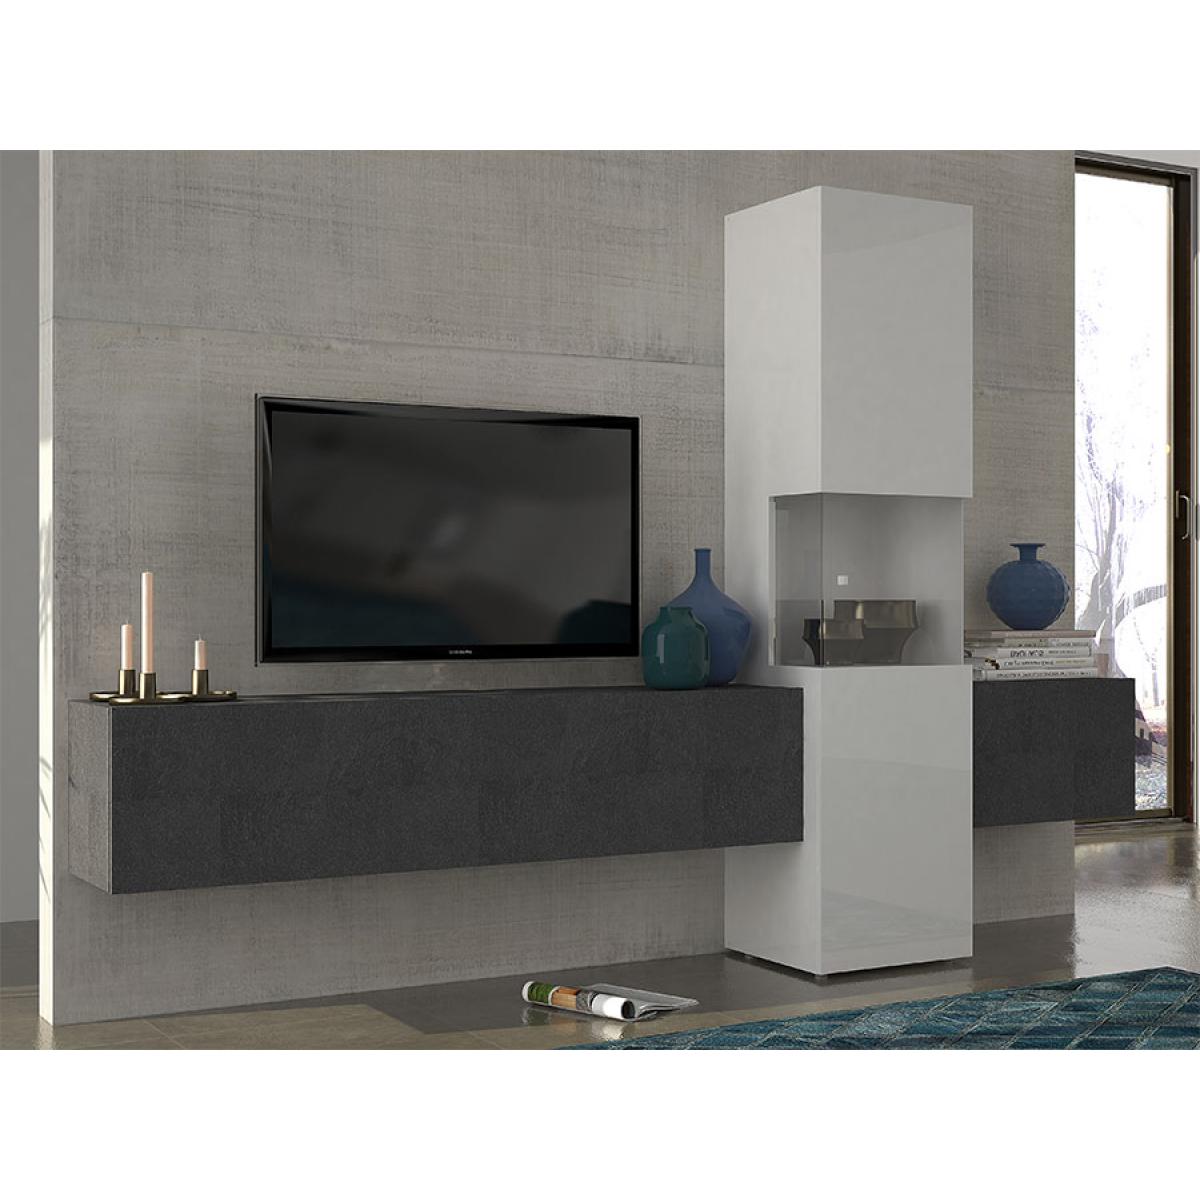 Kasalinea - Ensemble meuble TV effet marbré et blanc laqué design ZACH - Meubles TV, Hi-Fi